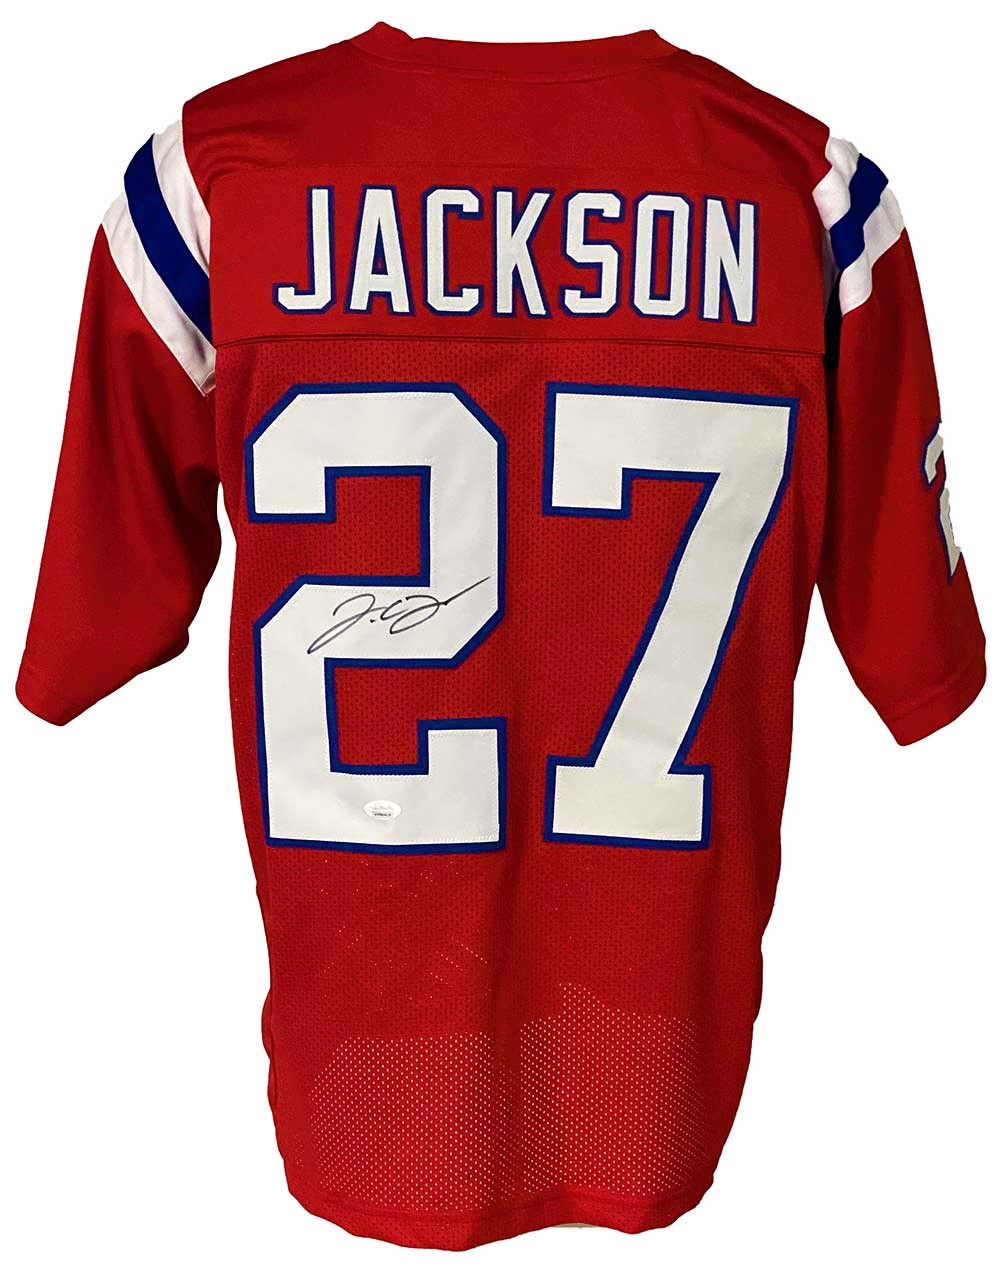 î€€Newî€ England Patriots J.C. Jackson Autographed Pro Style Red Jersey JSA ...